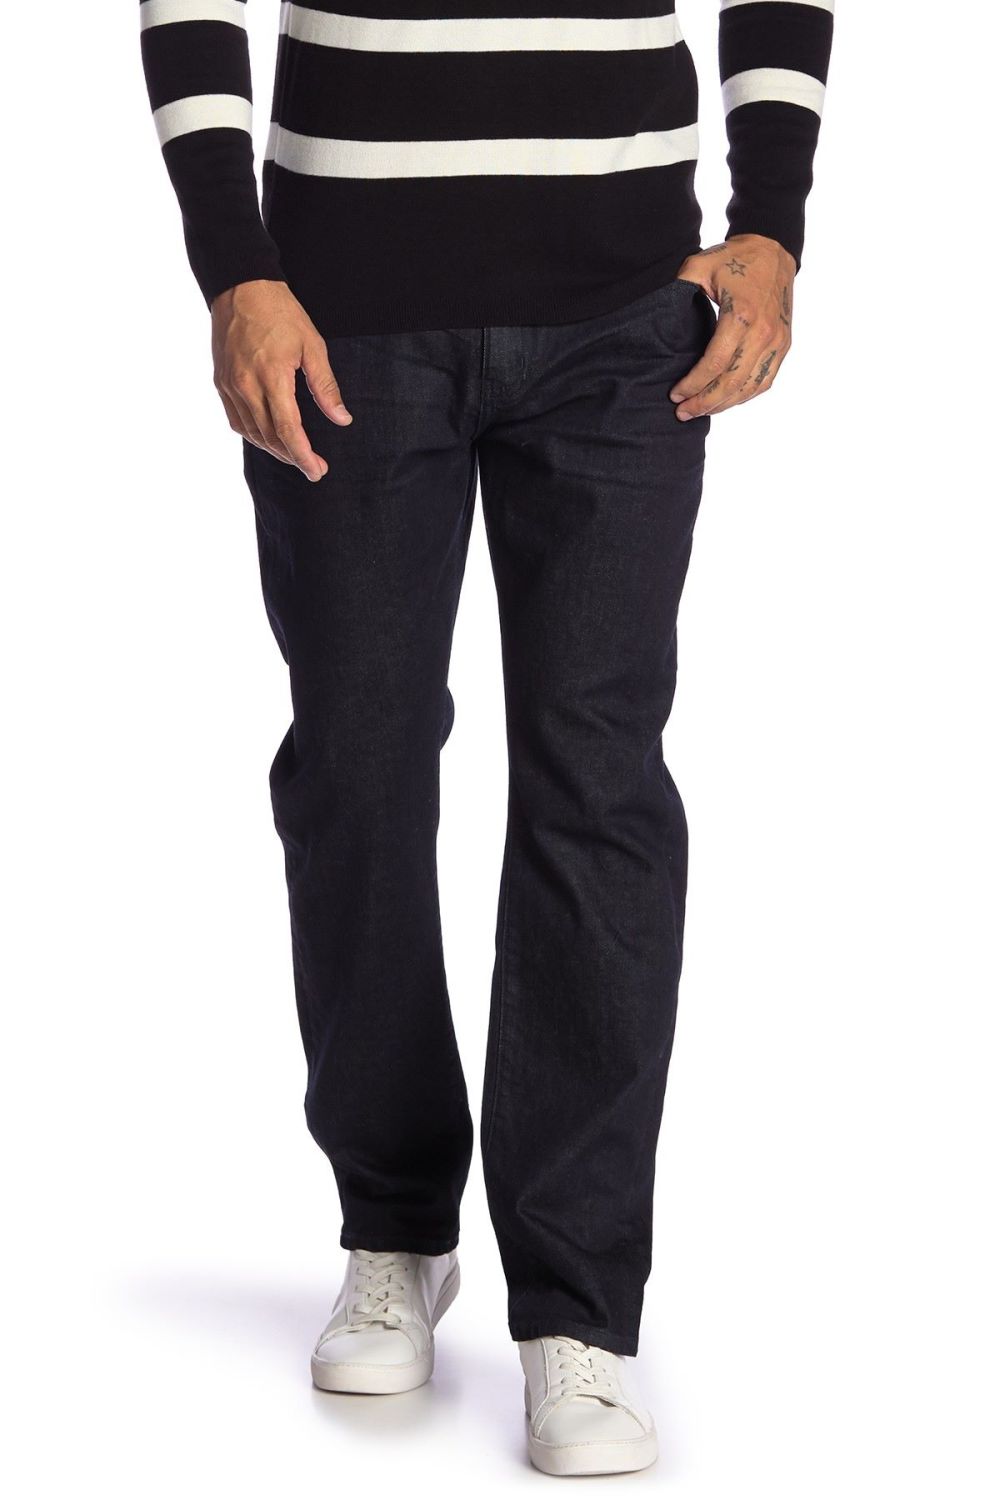 Dark Wash Slim Straight Jeans|Size: 36x32 (BS)